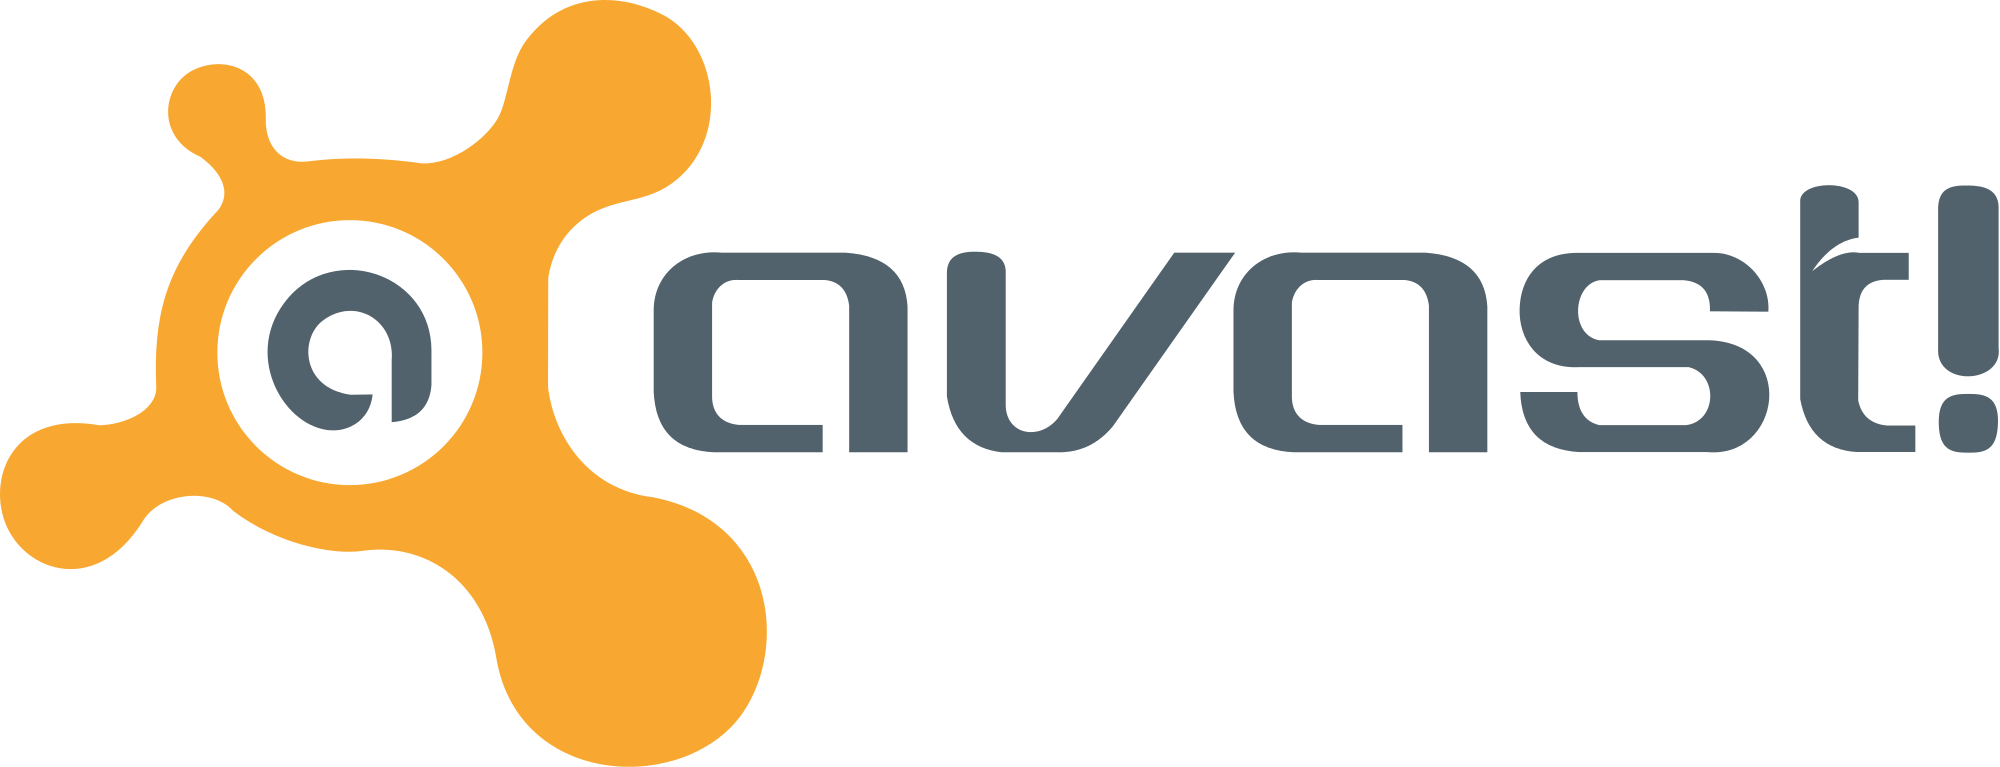 Avast Logo White